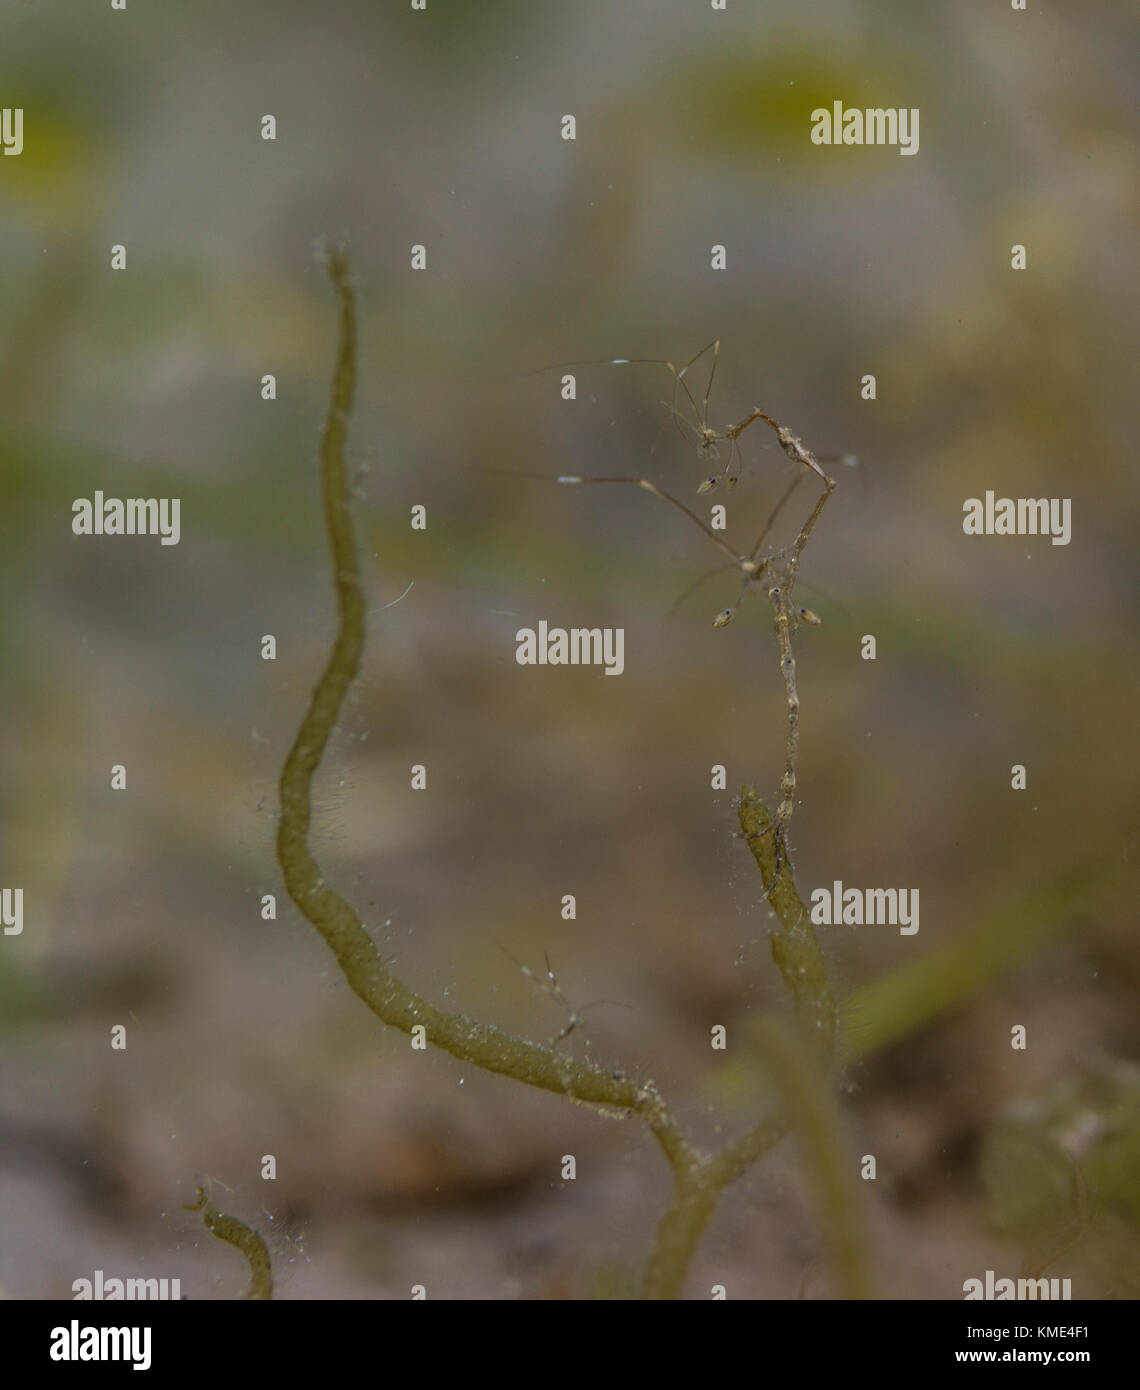 Skeleton shrimp on seagrass Stock Photo